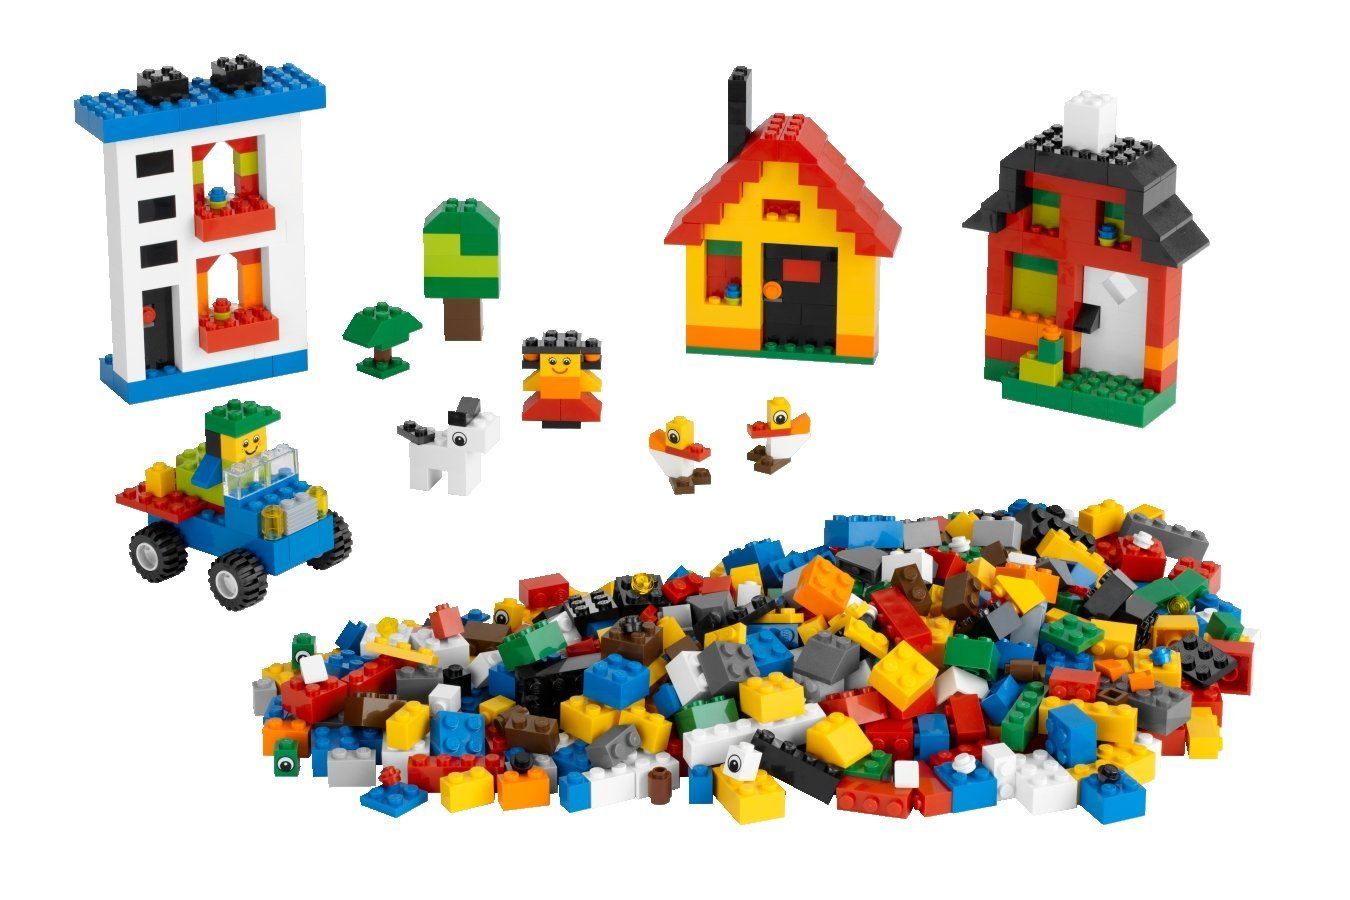 Cửa hàng chuyên bán bộ đồ chơi xếp hình lego trẻ em giá rẻ